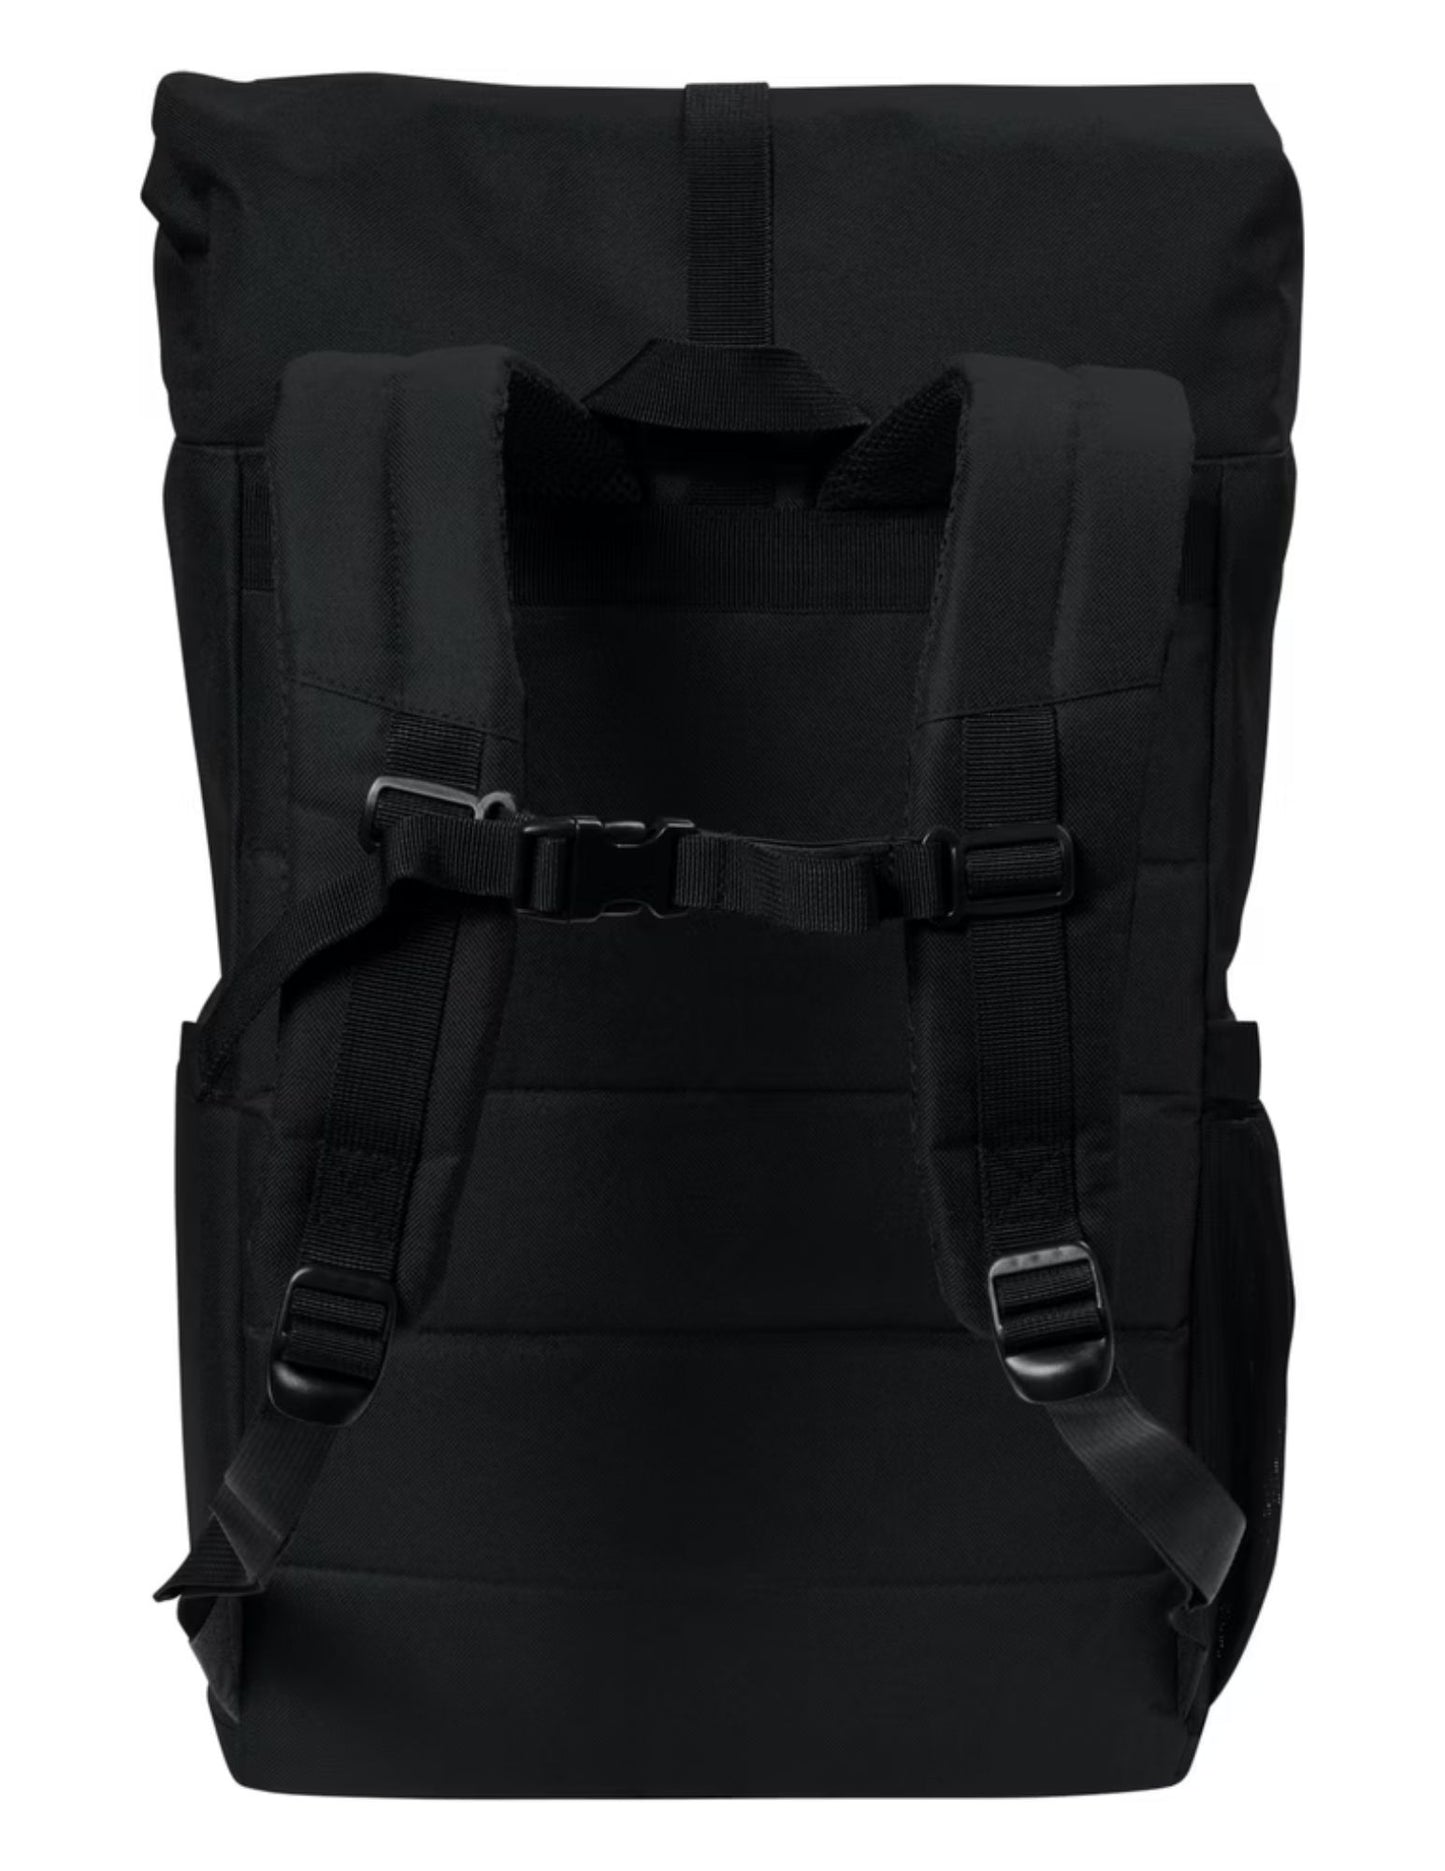 FVWC Backpack Cooler/ Snack Bag